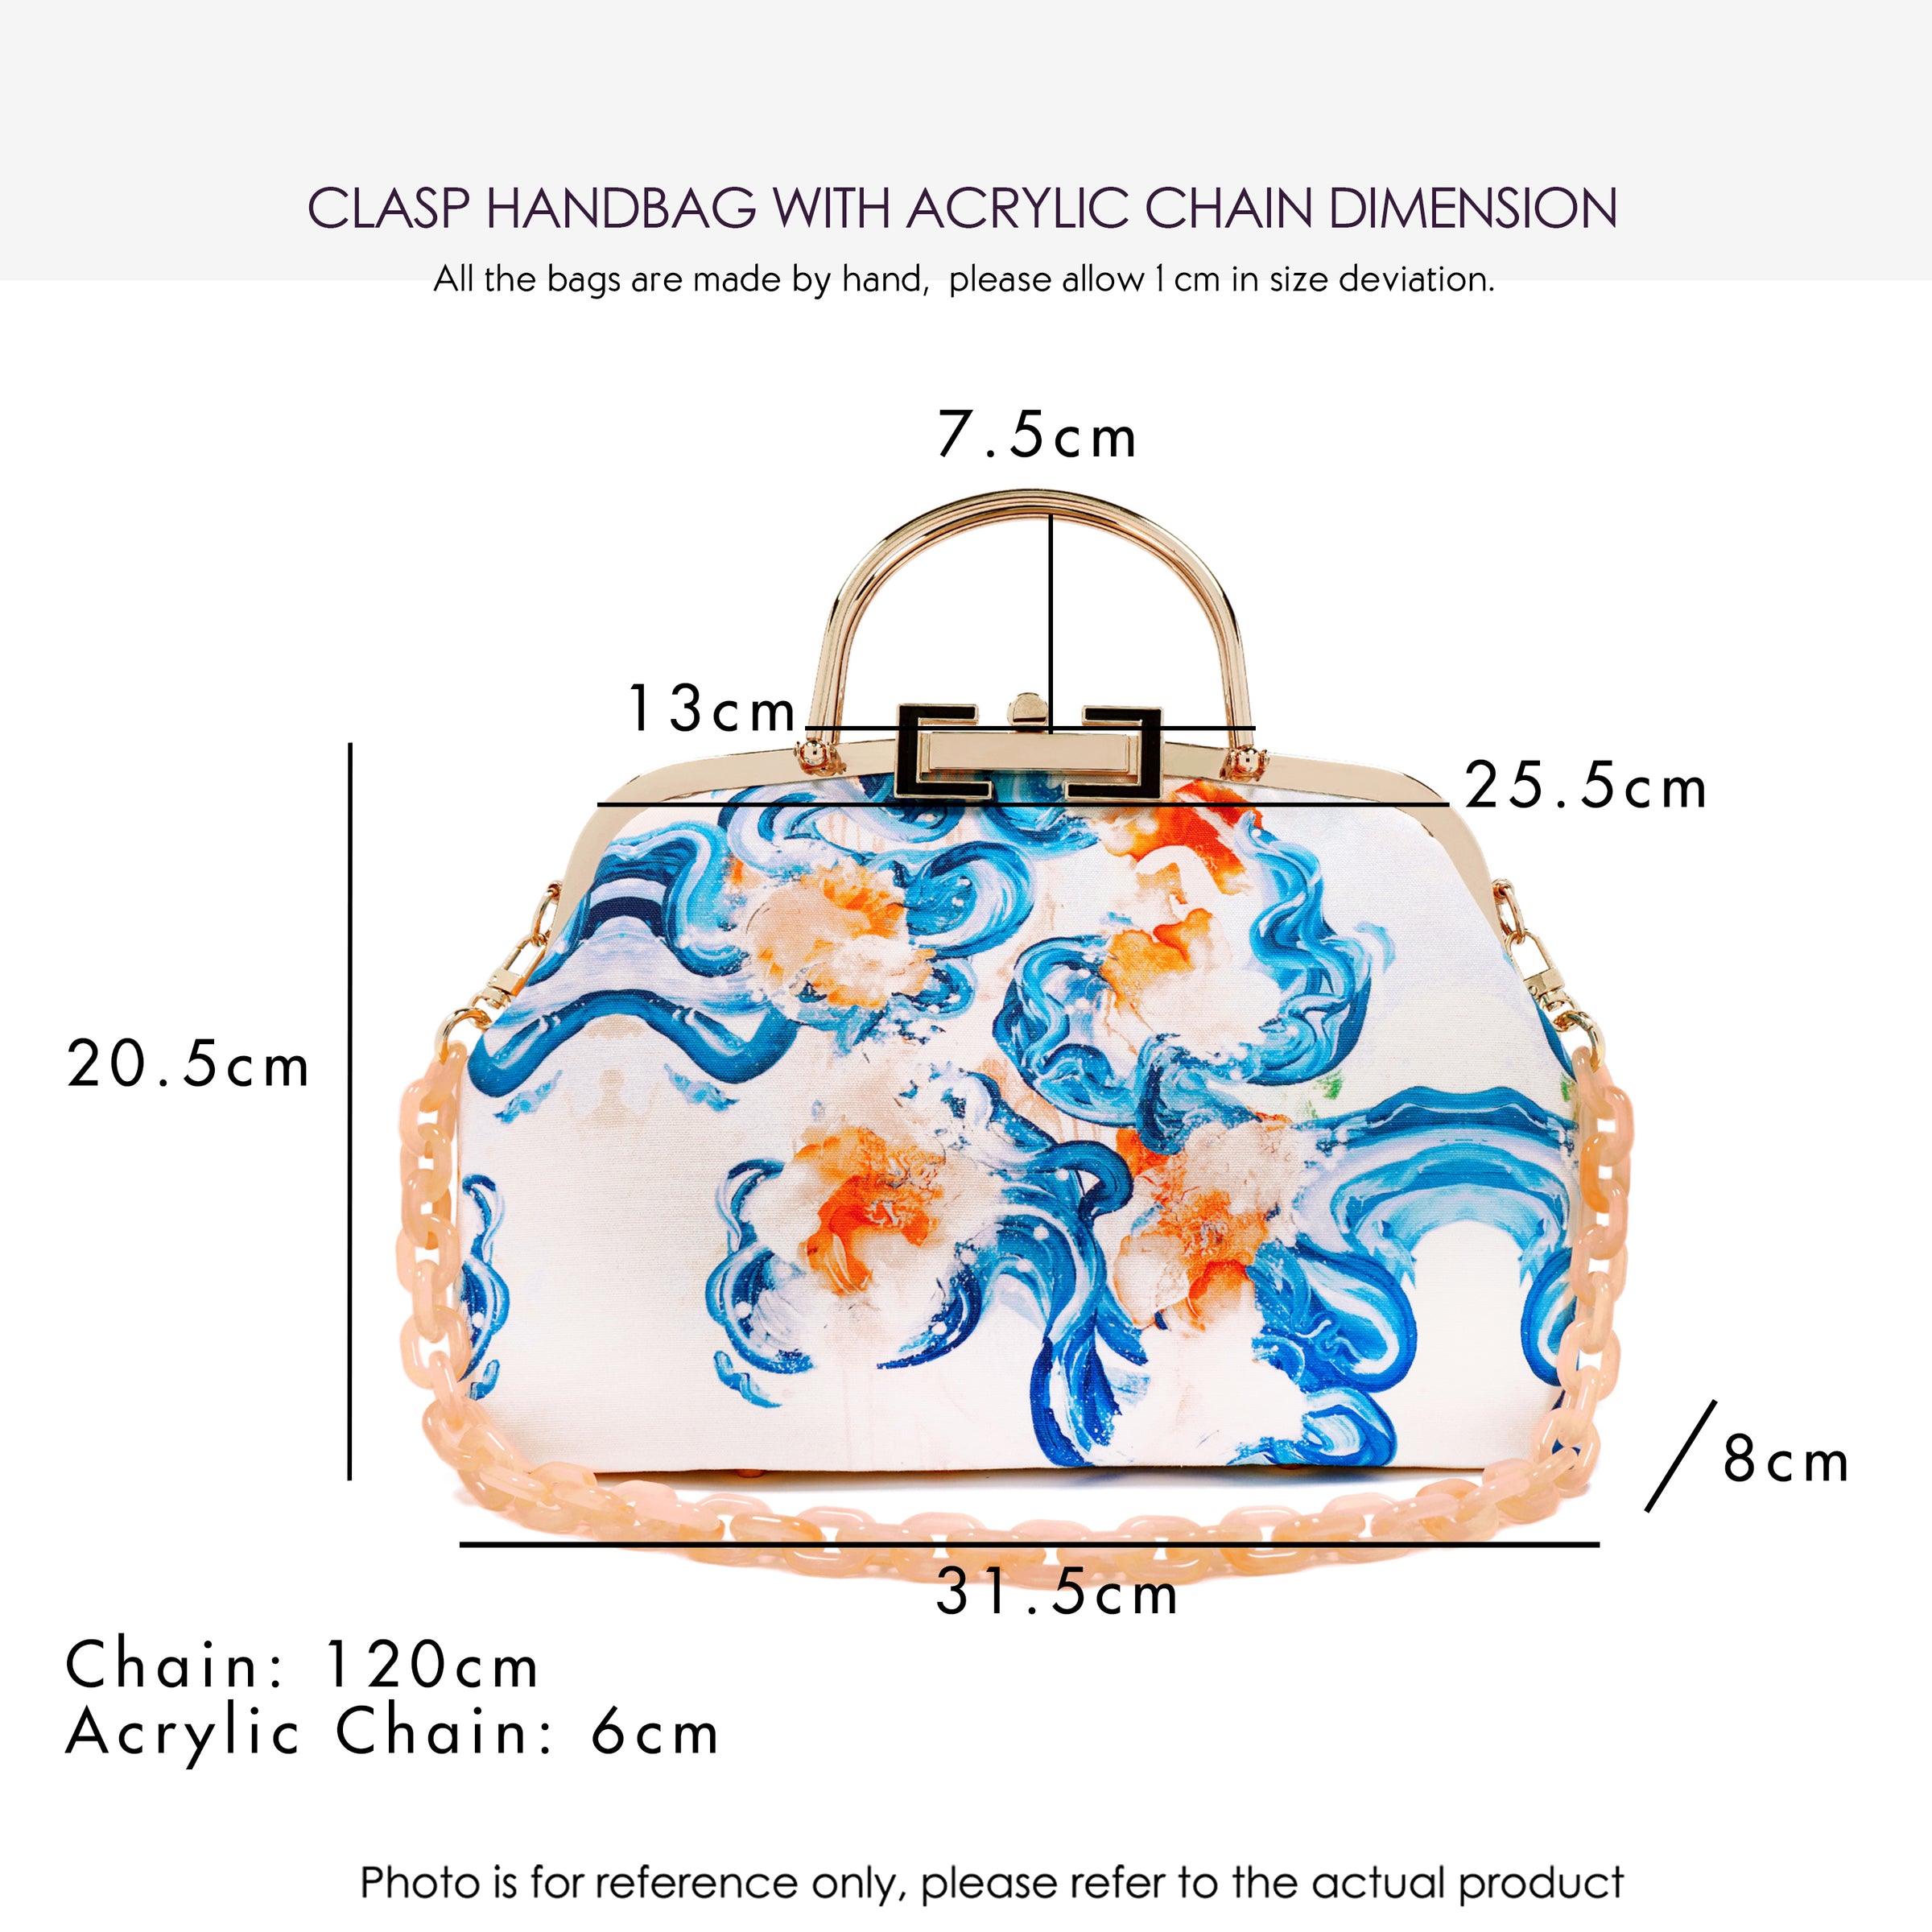 Clasp Handbag with Acrylic Chain - Rain Tiles